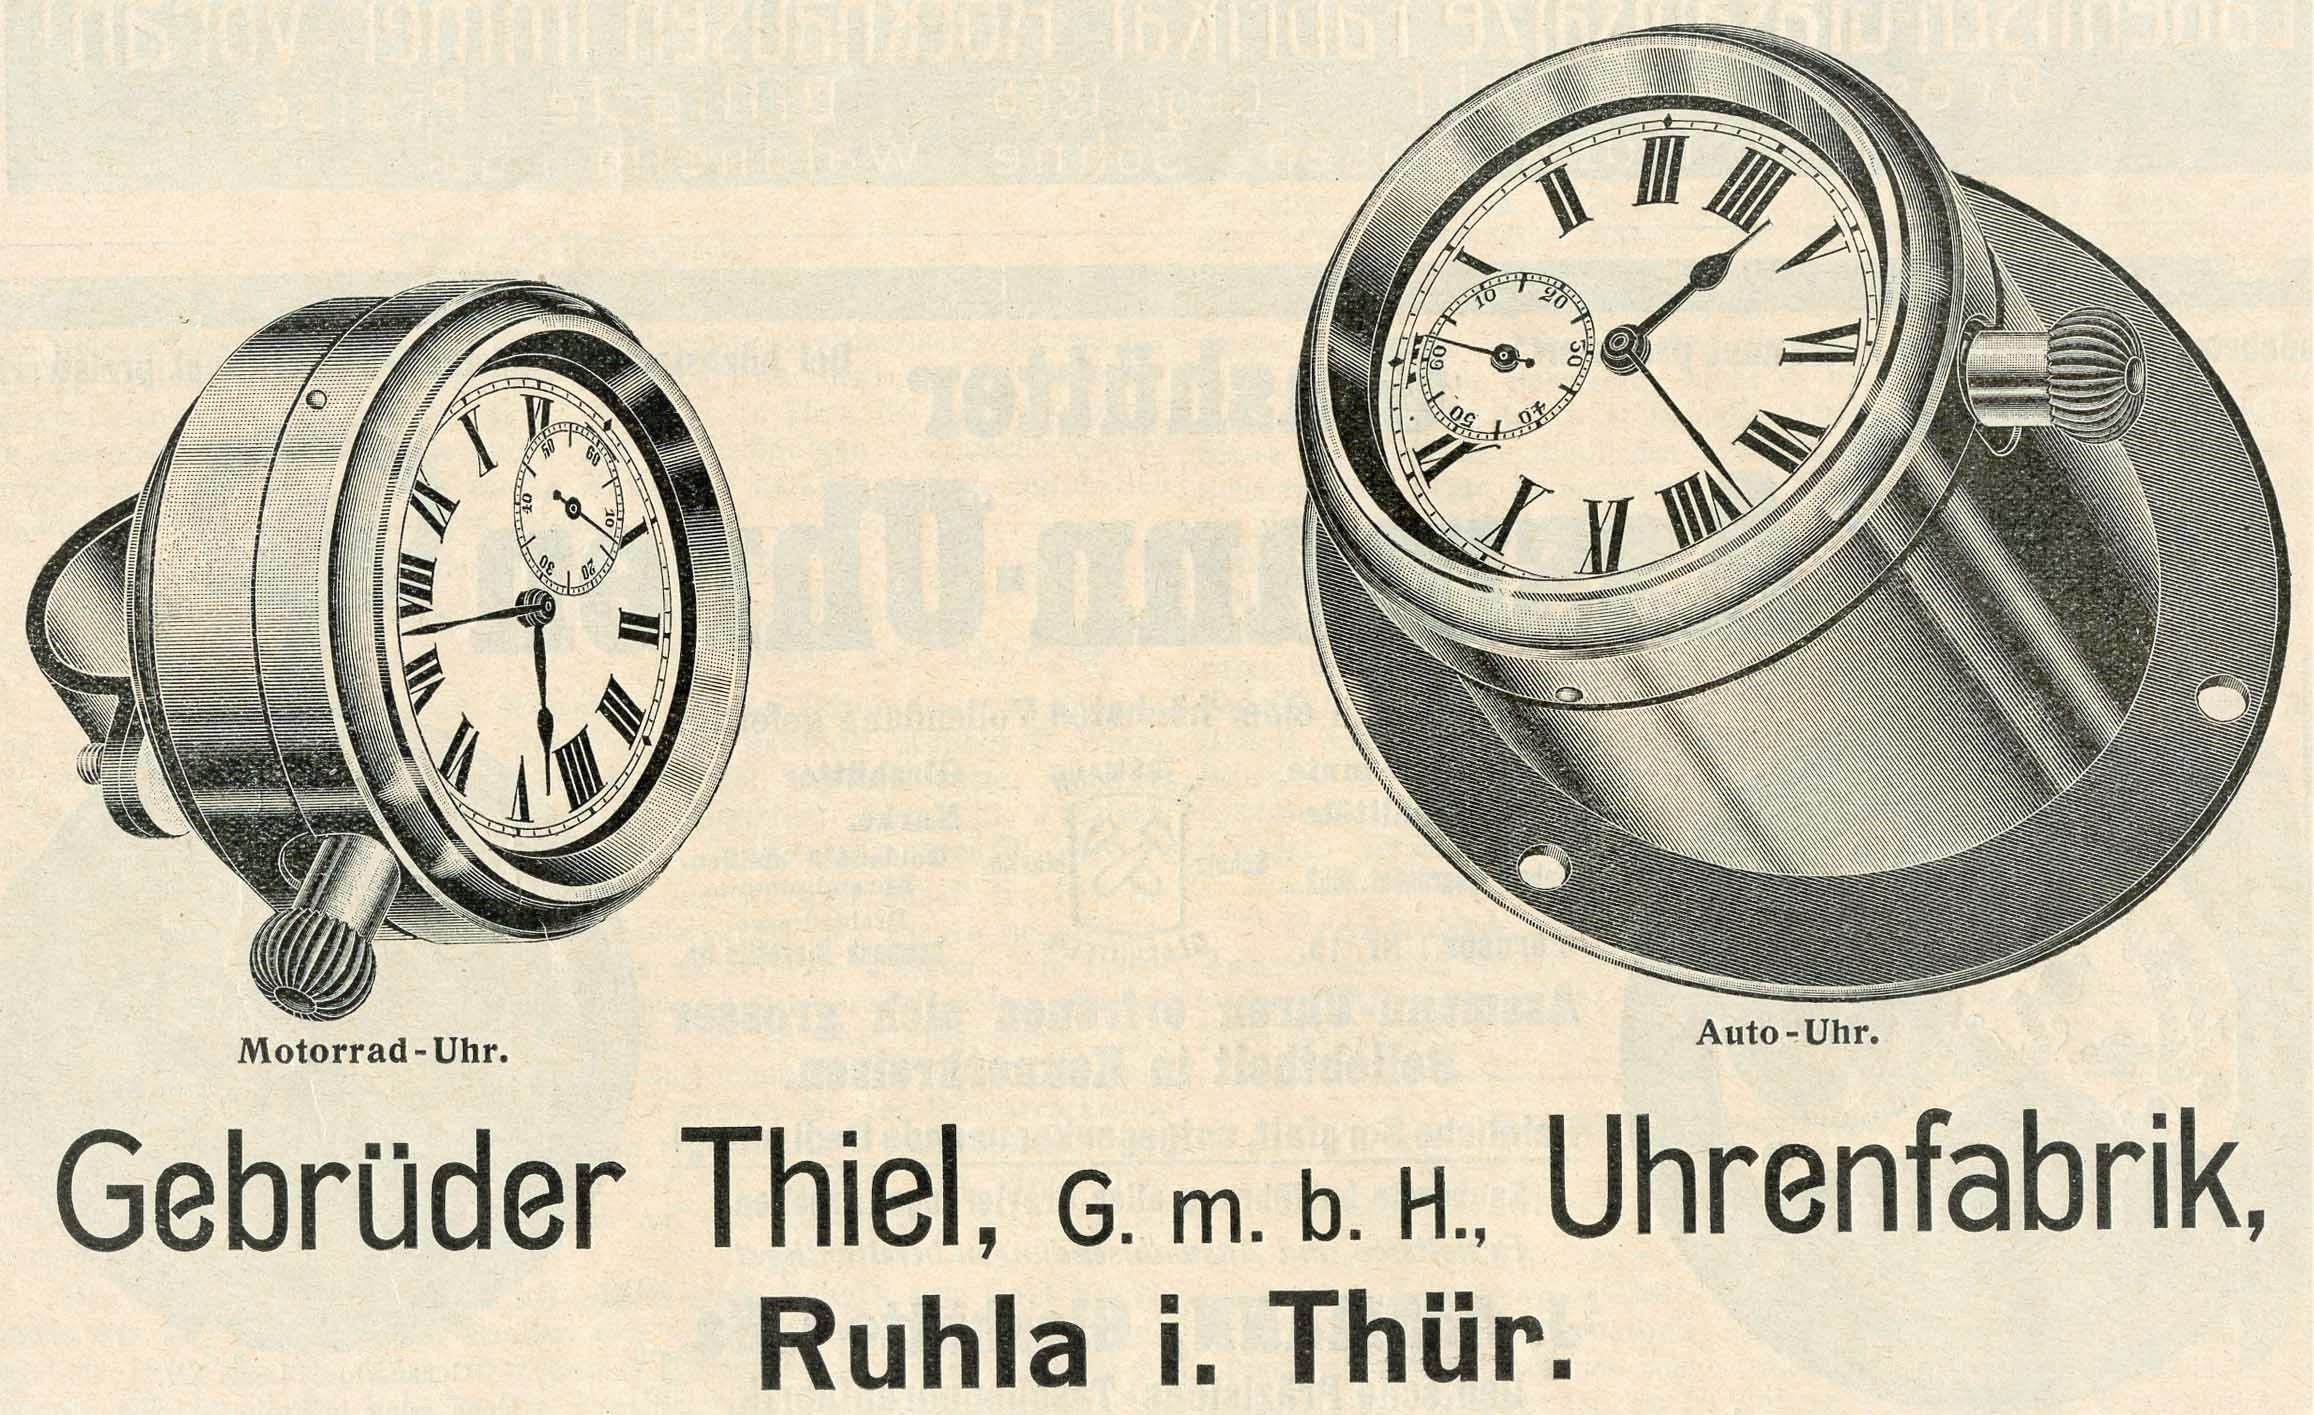 Ruhla Autouhren / Ruhla Car Clocks